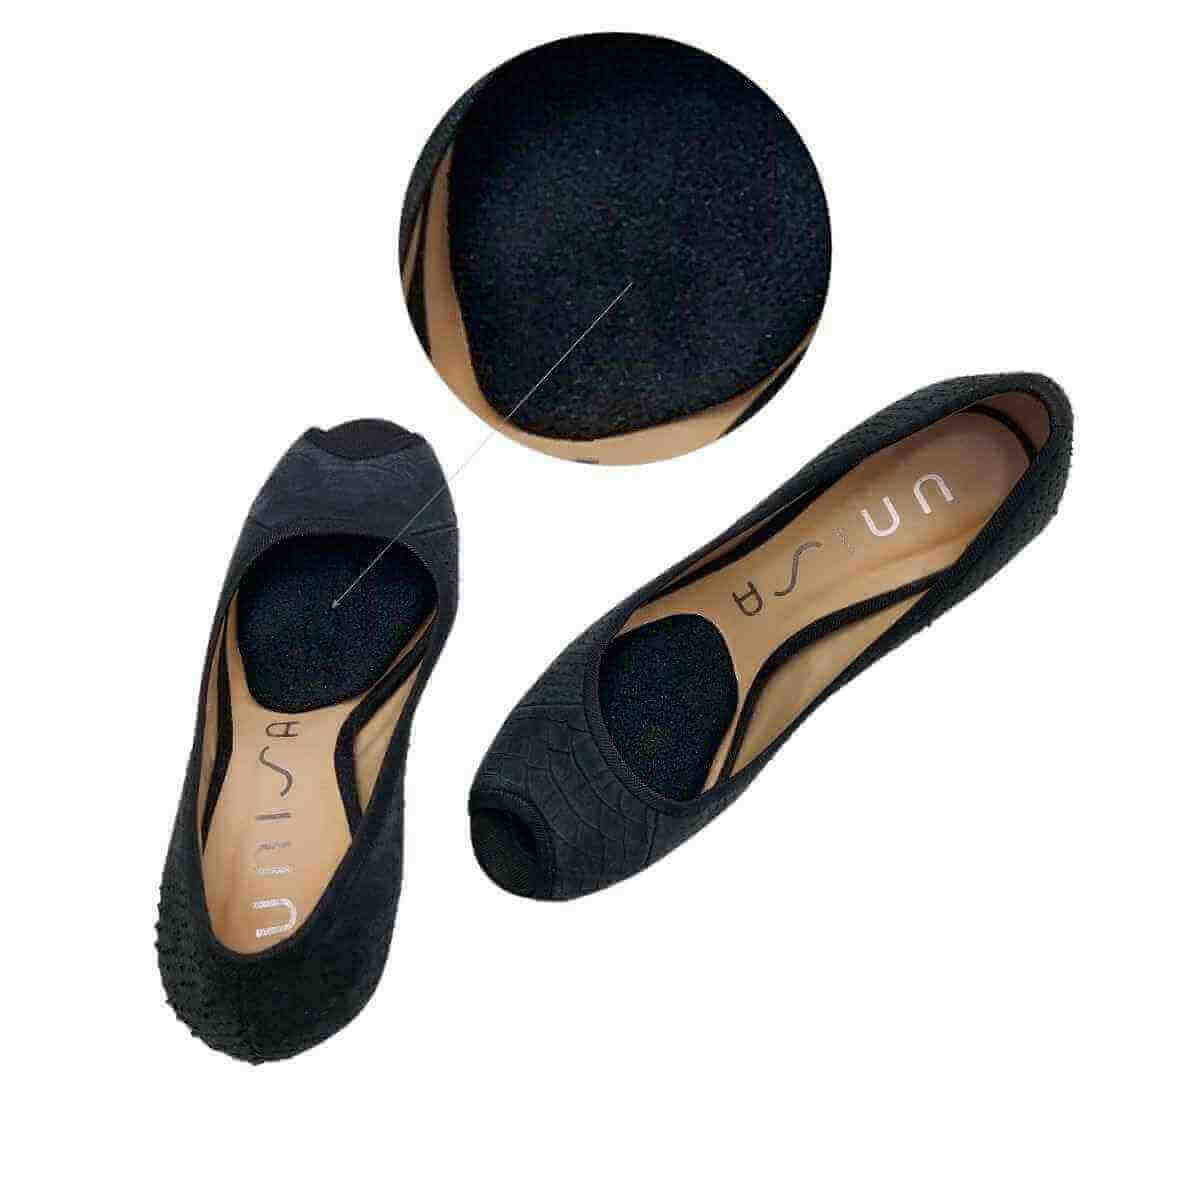 orfodssål i gel - Komfort til øm forfod i stilletter og høje sko sko - Køb blødt forfodsindlæg der reducerer presset på forfoden / fodsåler fra hårdt underlag. 2 stk. - Billig pris